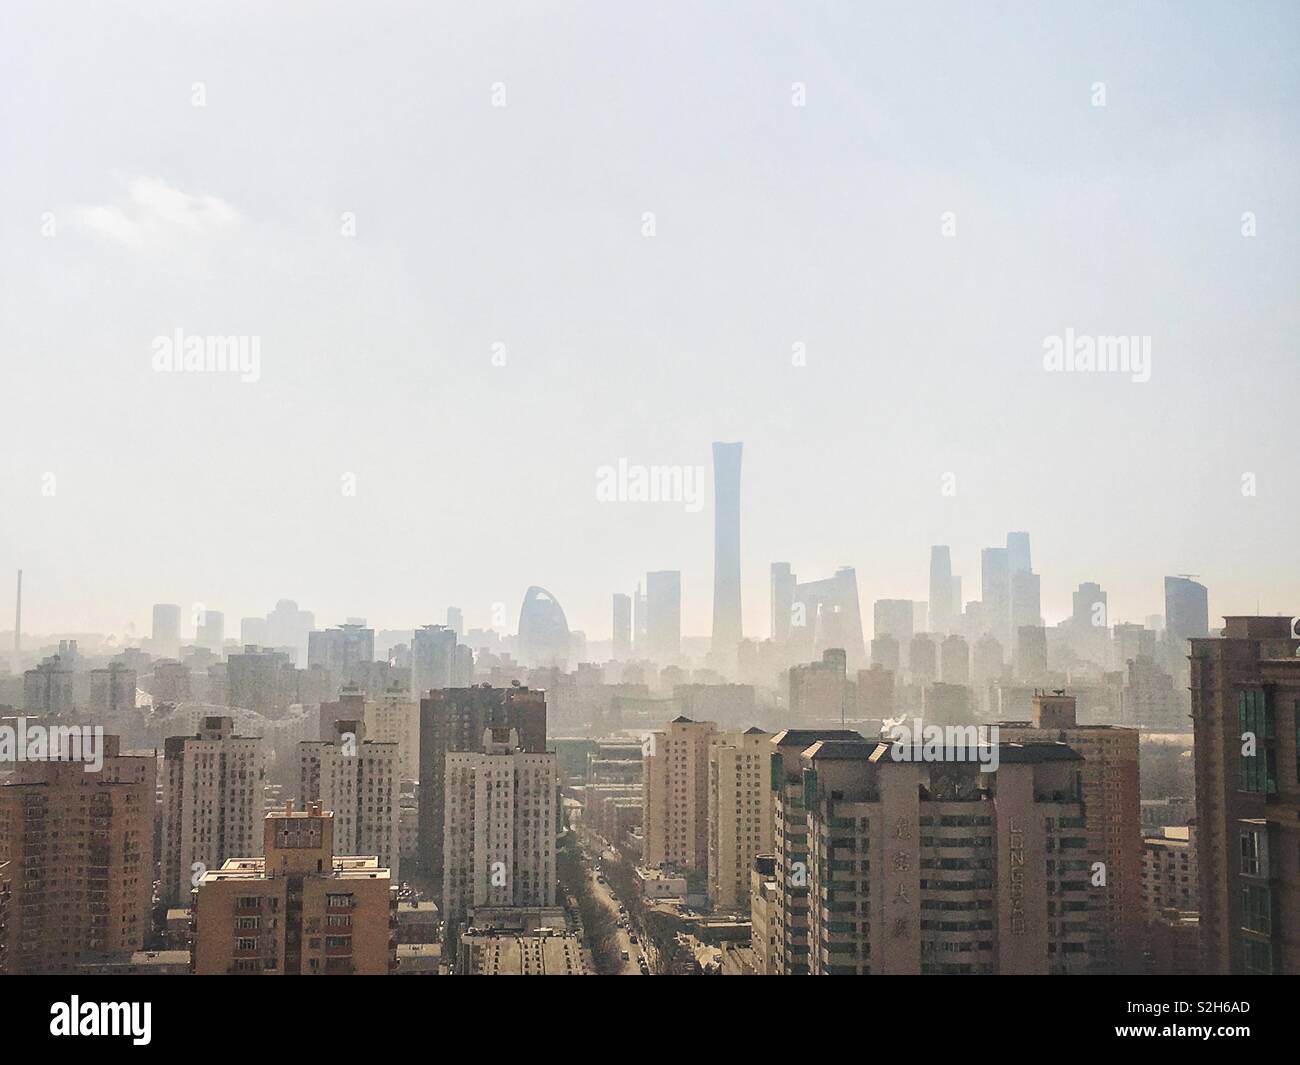 Skyline of Beijing, China Stock Photo